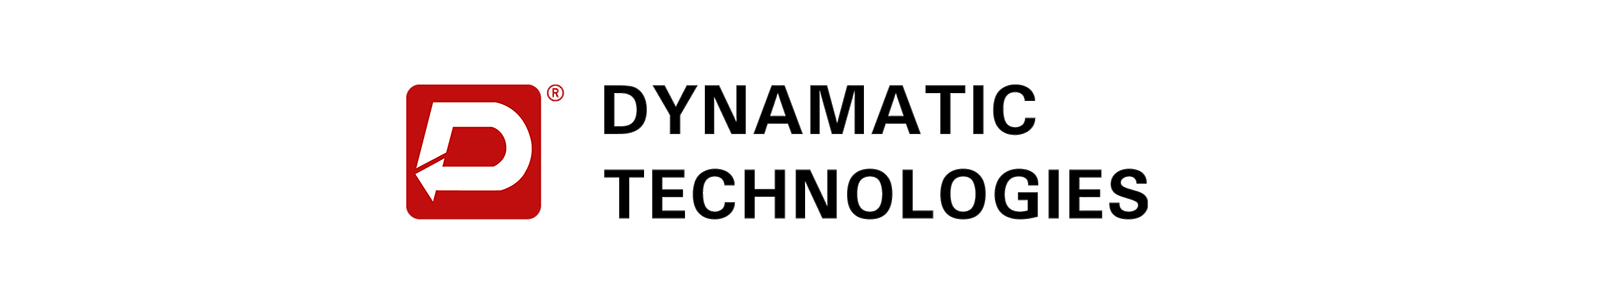 Dynamatic Technologies-300a